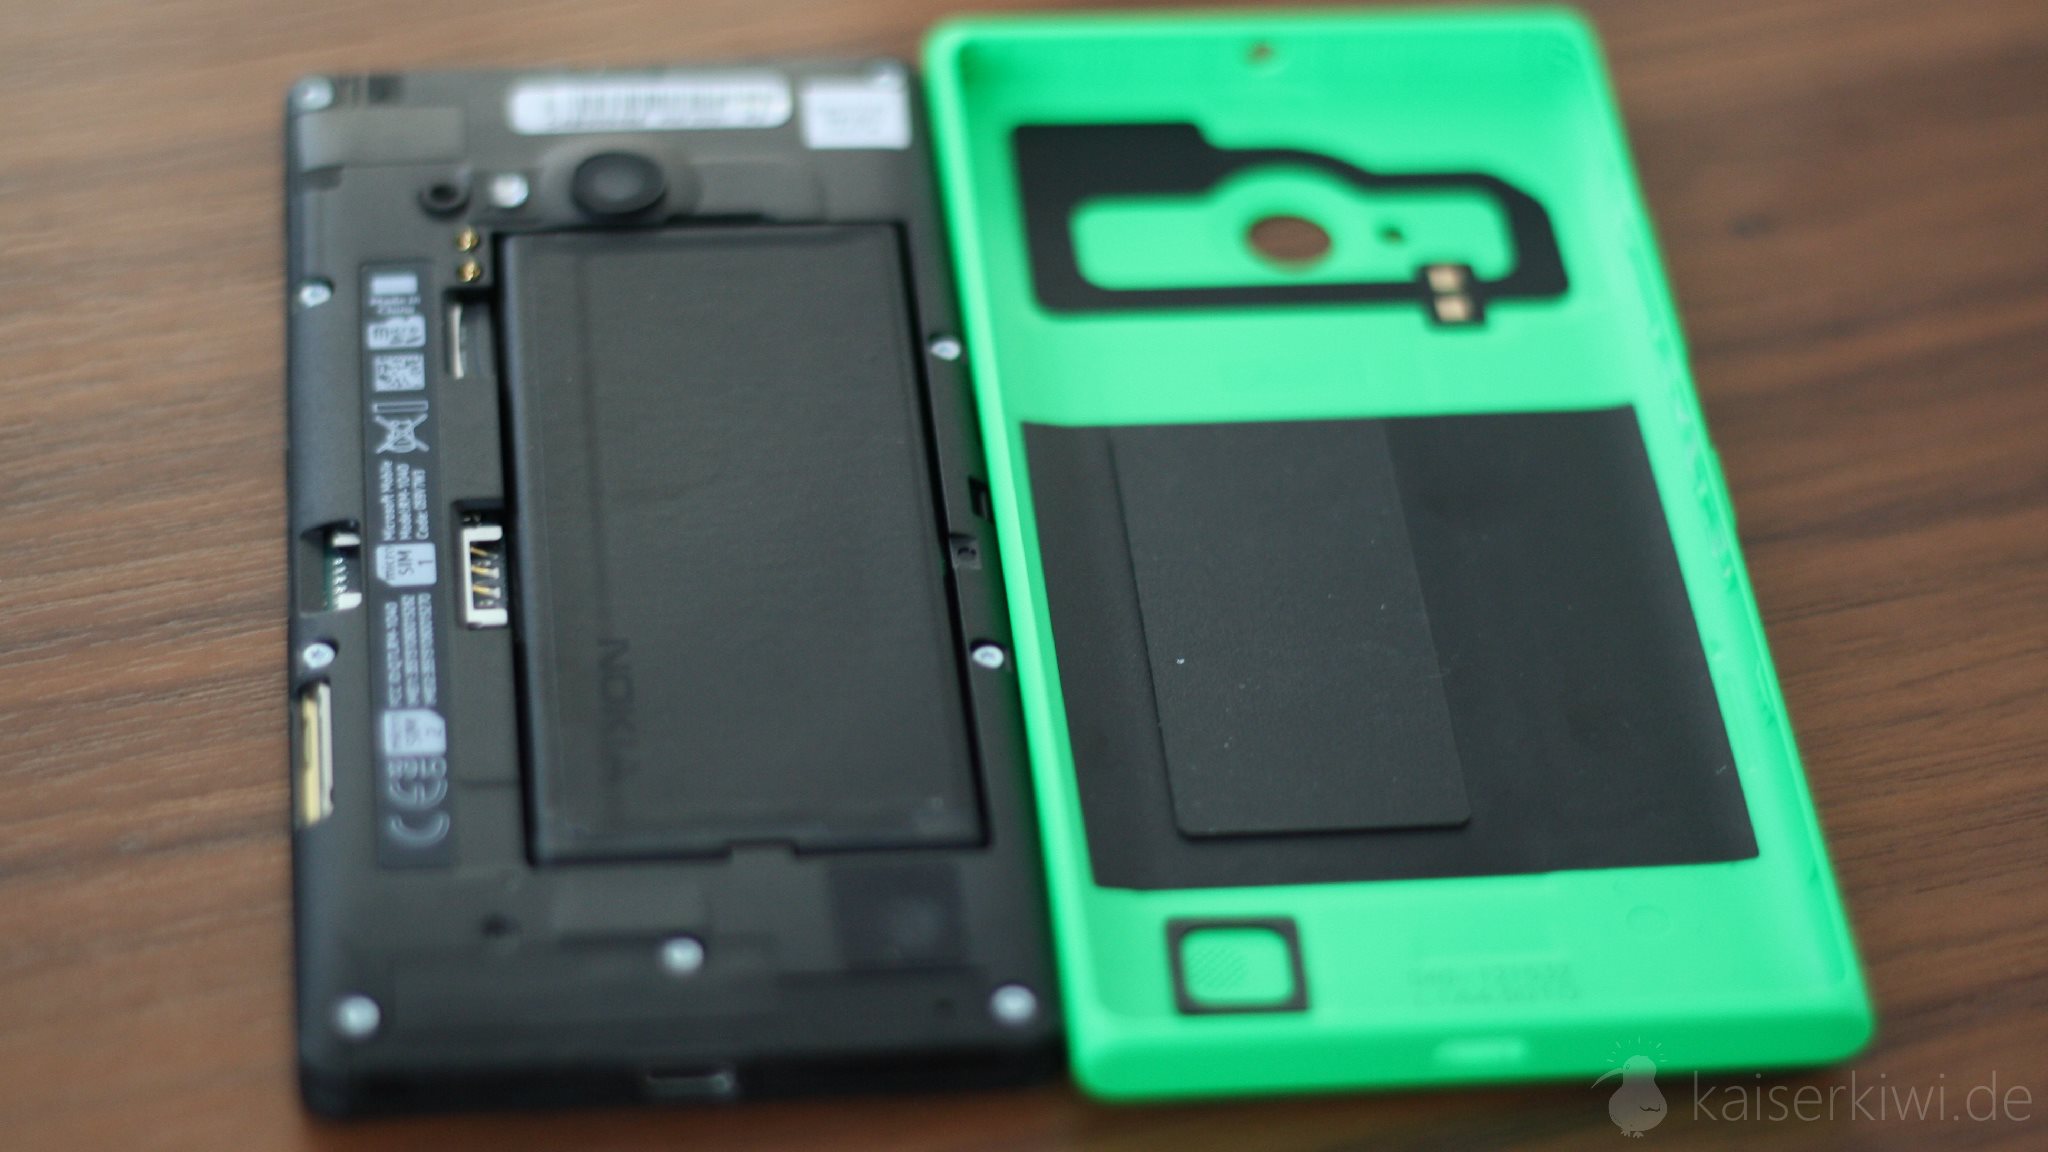 Nokia Lumia 735 - Grün mit offener Rückseite